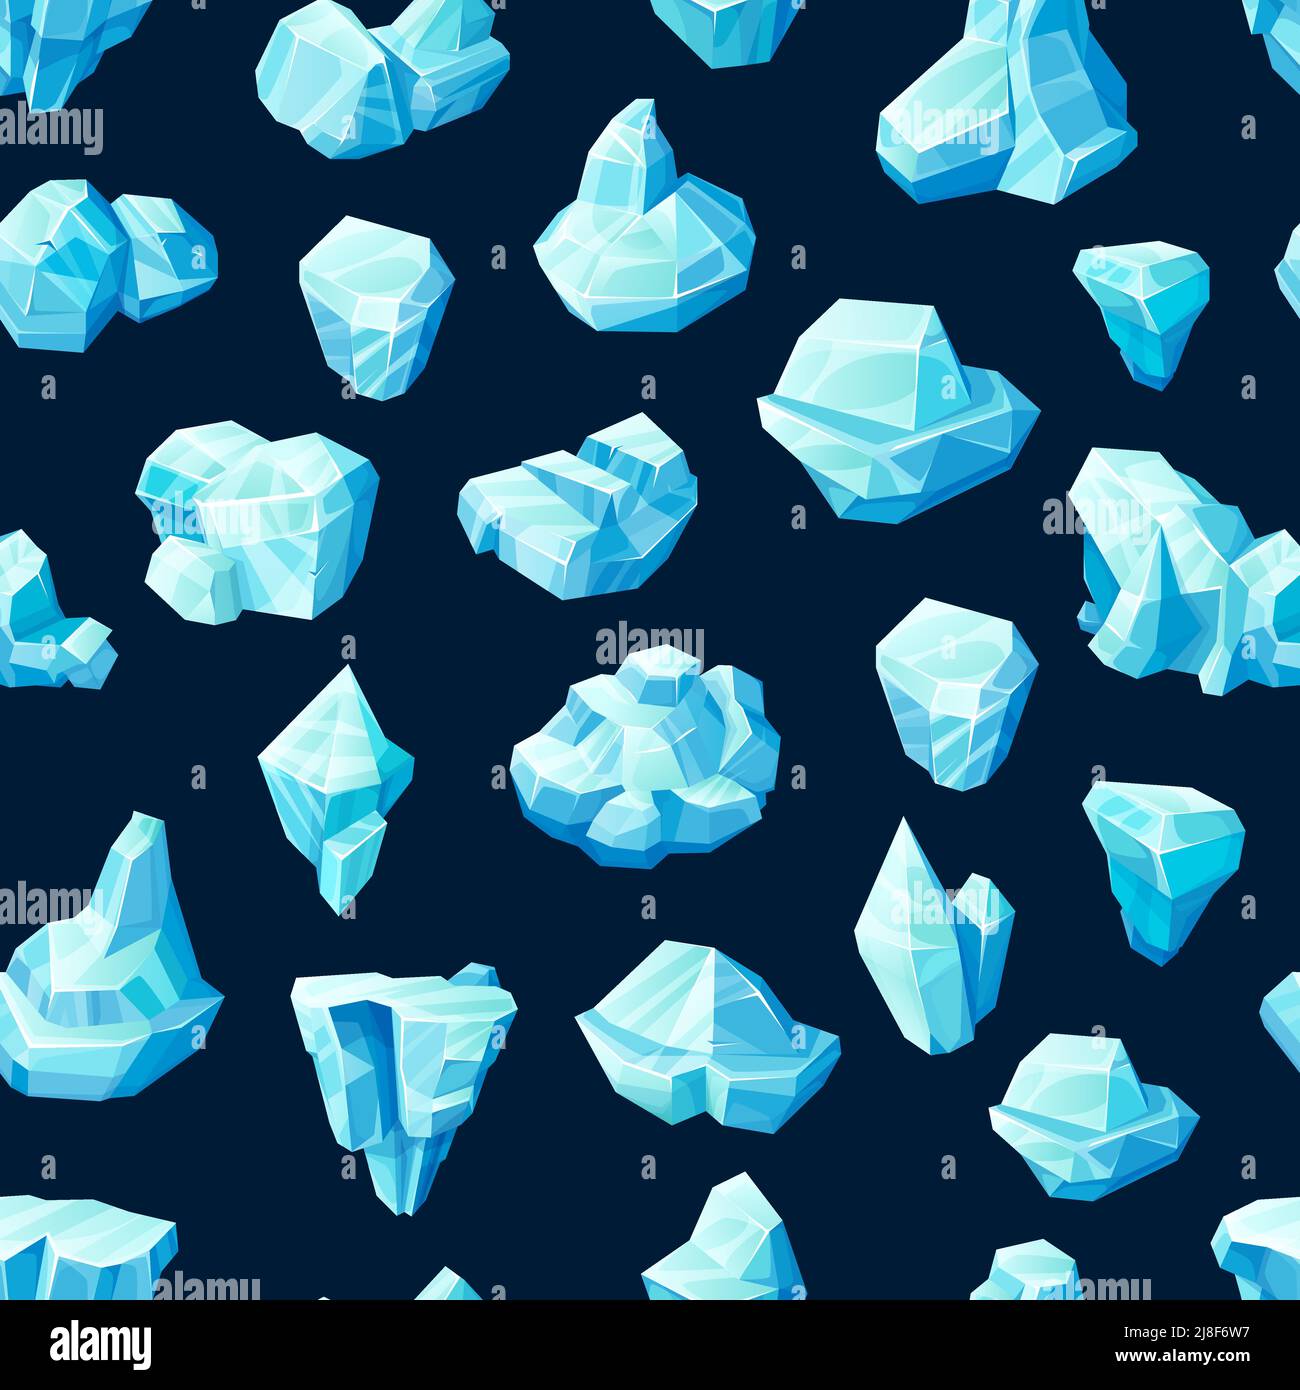 Cubetti di ghiaccio blu e cristalli senza cuciture. Sfondo vettoriale con blocchi di cartone congelato, iceberg, pietre magiche e carri ghiacciati o stalagmiti. Disegno astratto con calotte ghiacciate Illustrazione Vettoriale